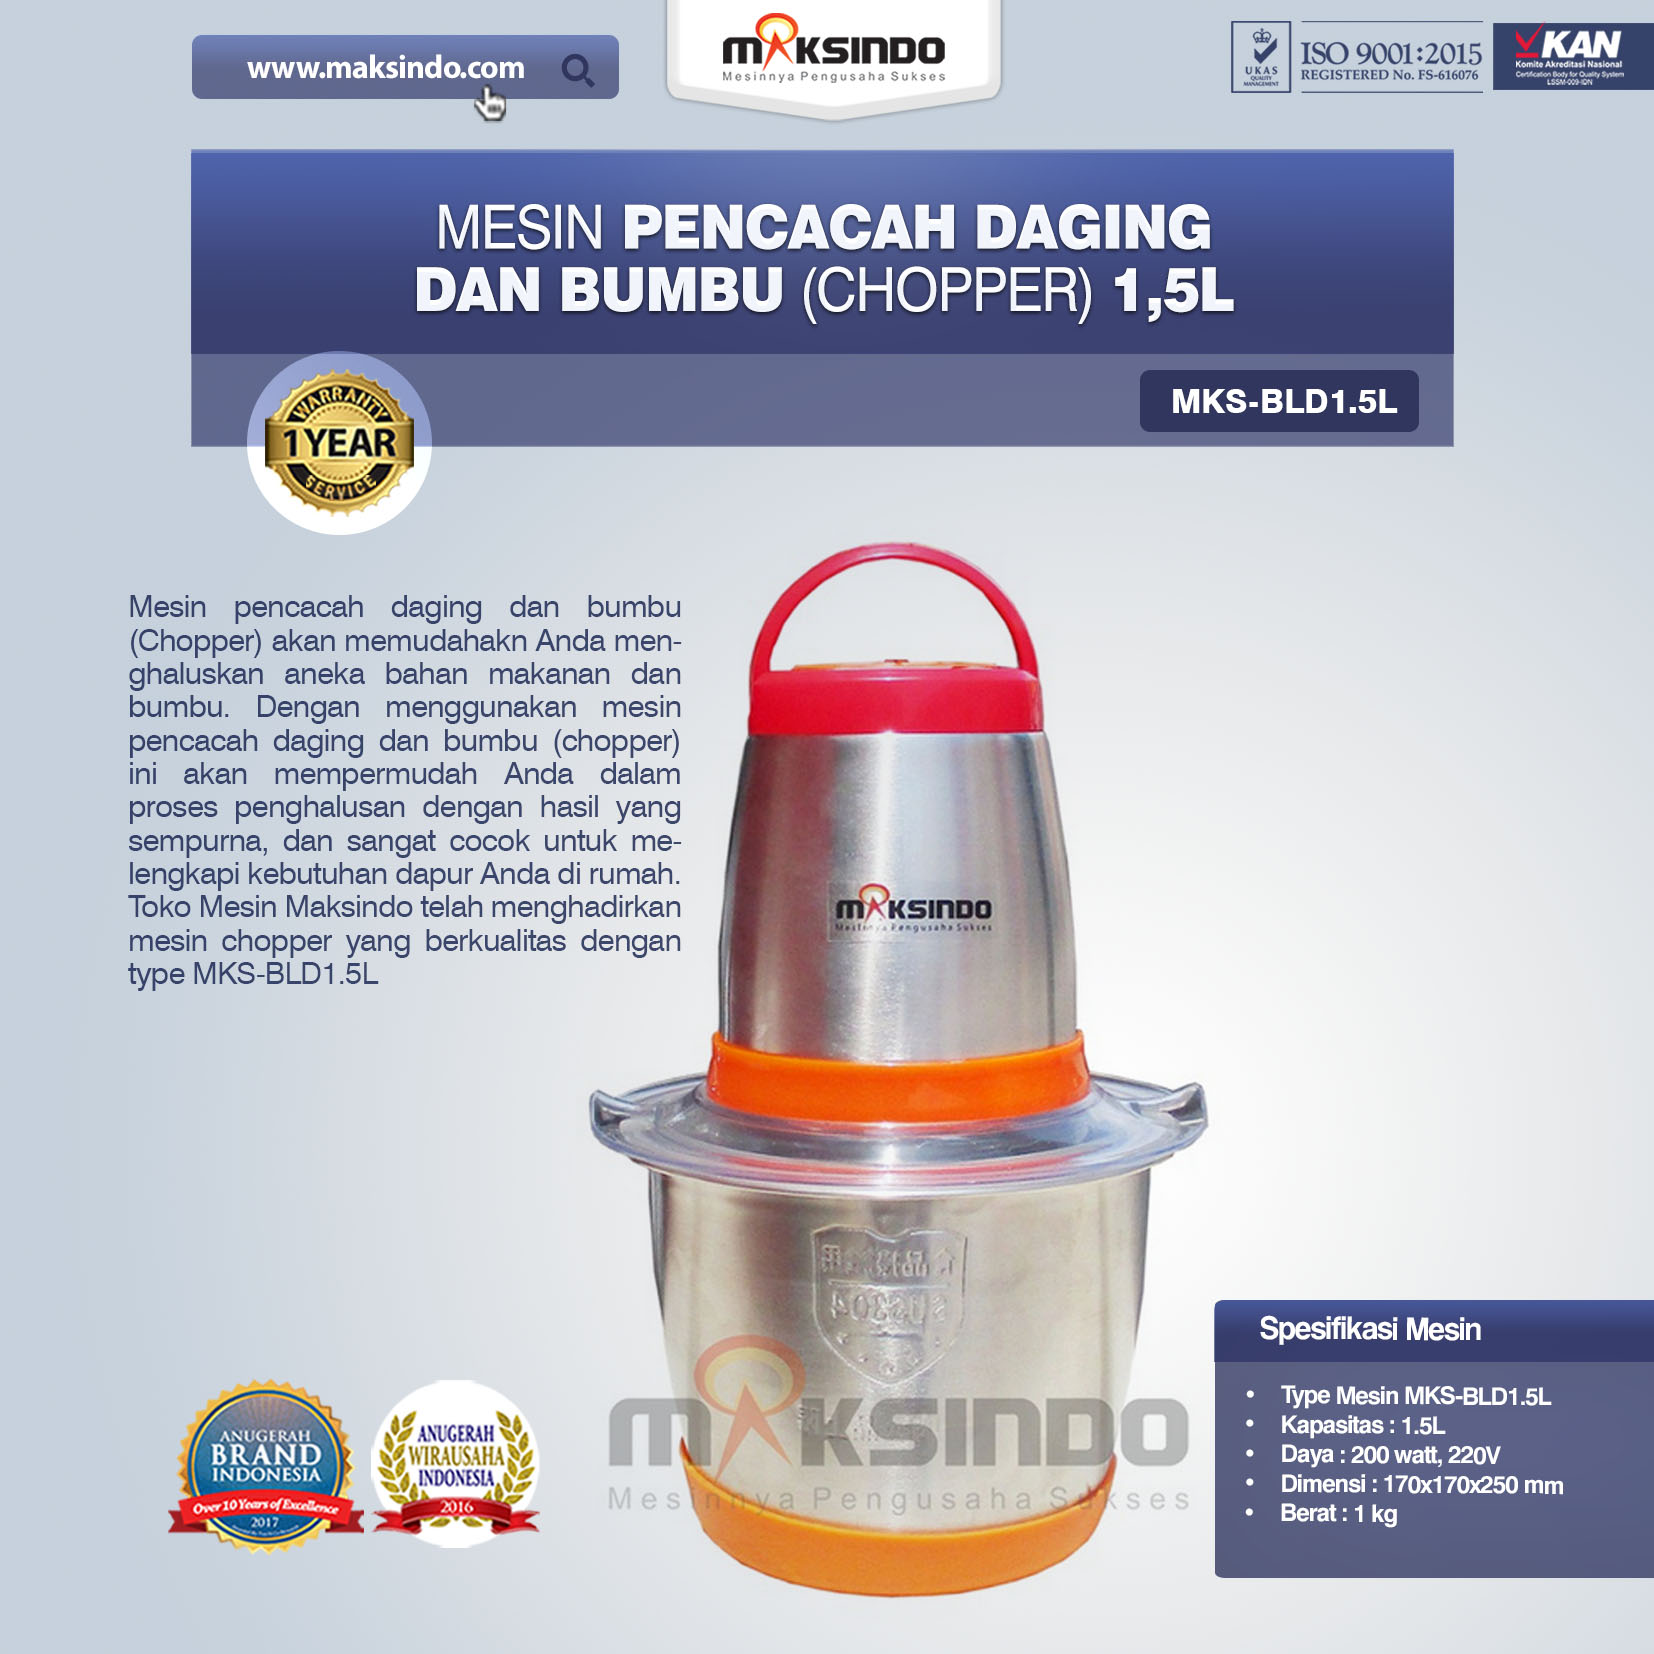 Jual Mesin Pencacah Daging Dan Bumbu (Chopper) MKS-BLD1.5L di Bogor